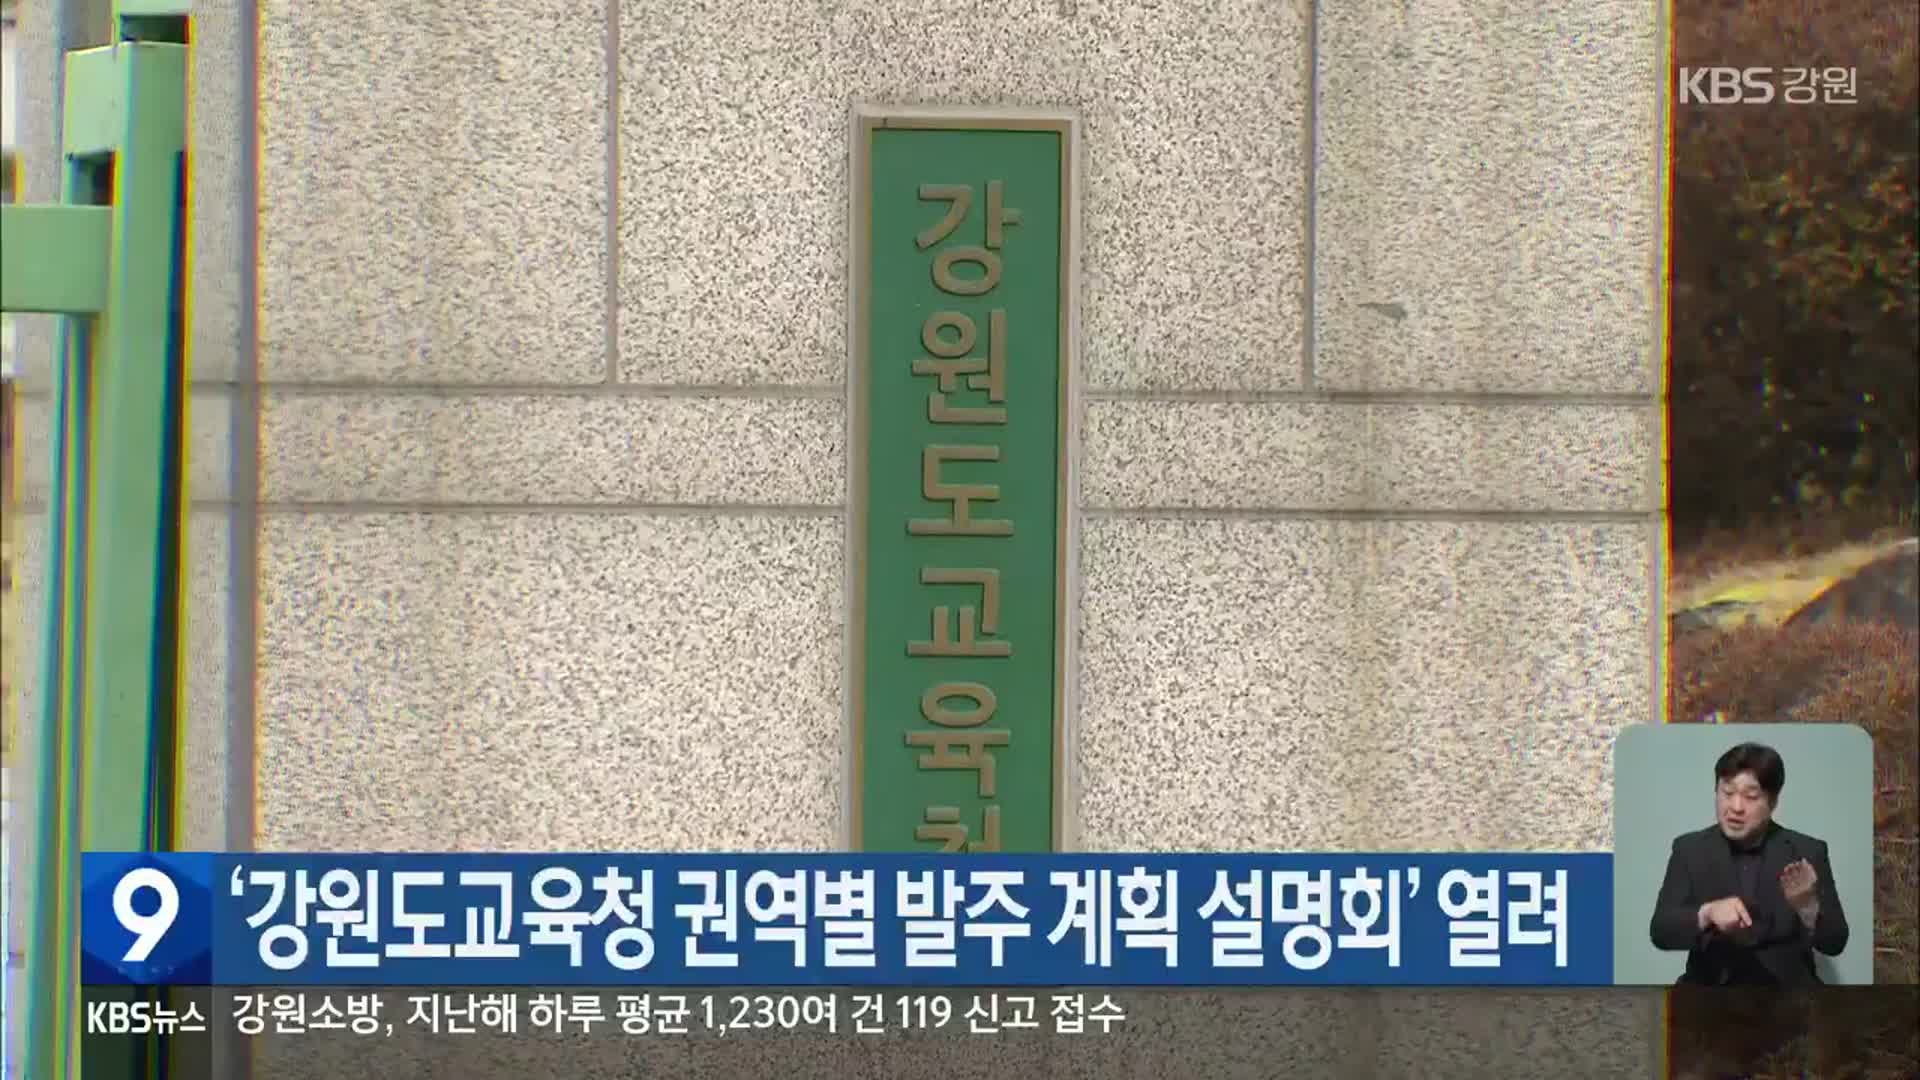 ‘강원도교육청 권역별 발주 계획 설명회’ 열려